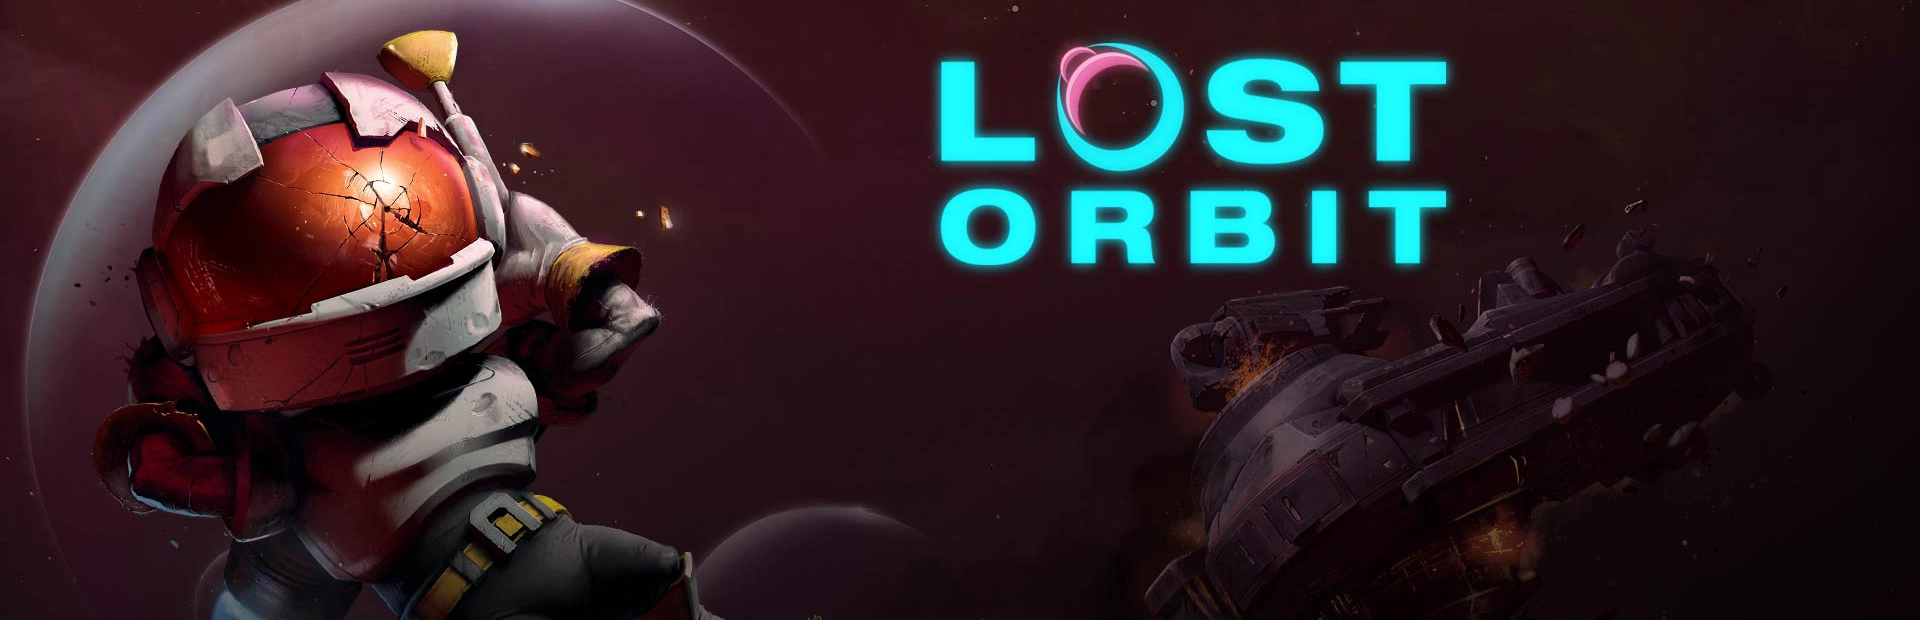 دانلود بازی Lost Orbit برای کامپیوتر | گیمباتو